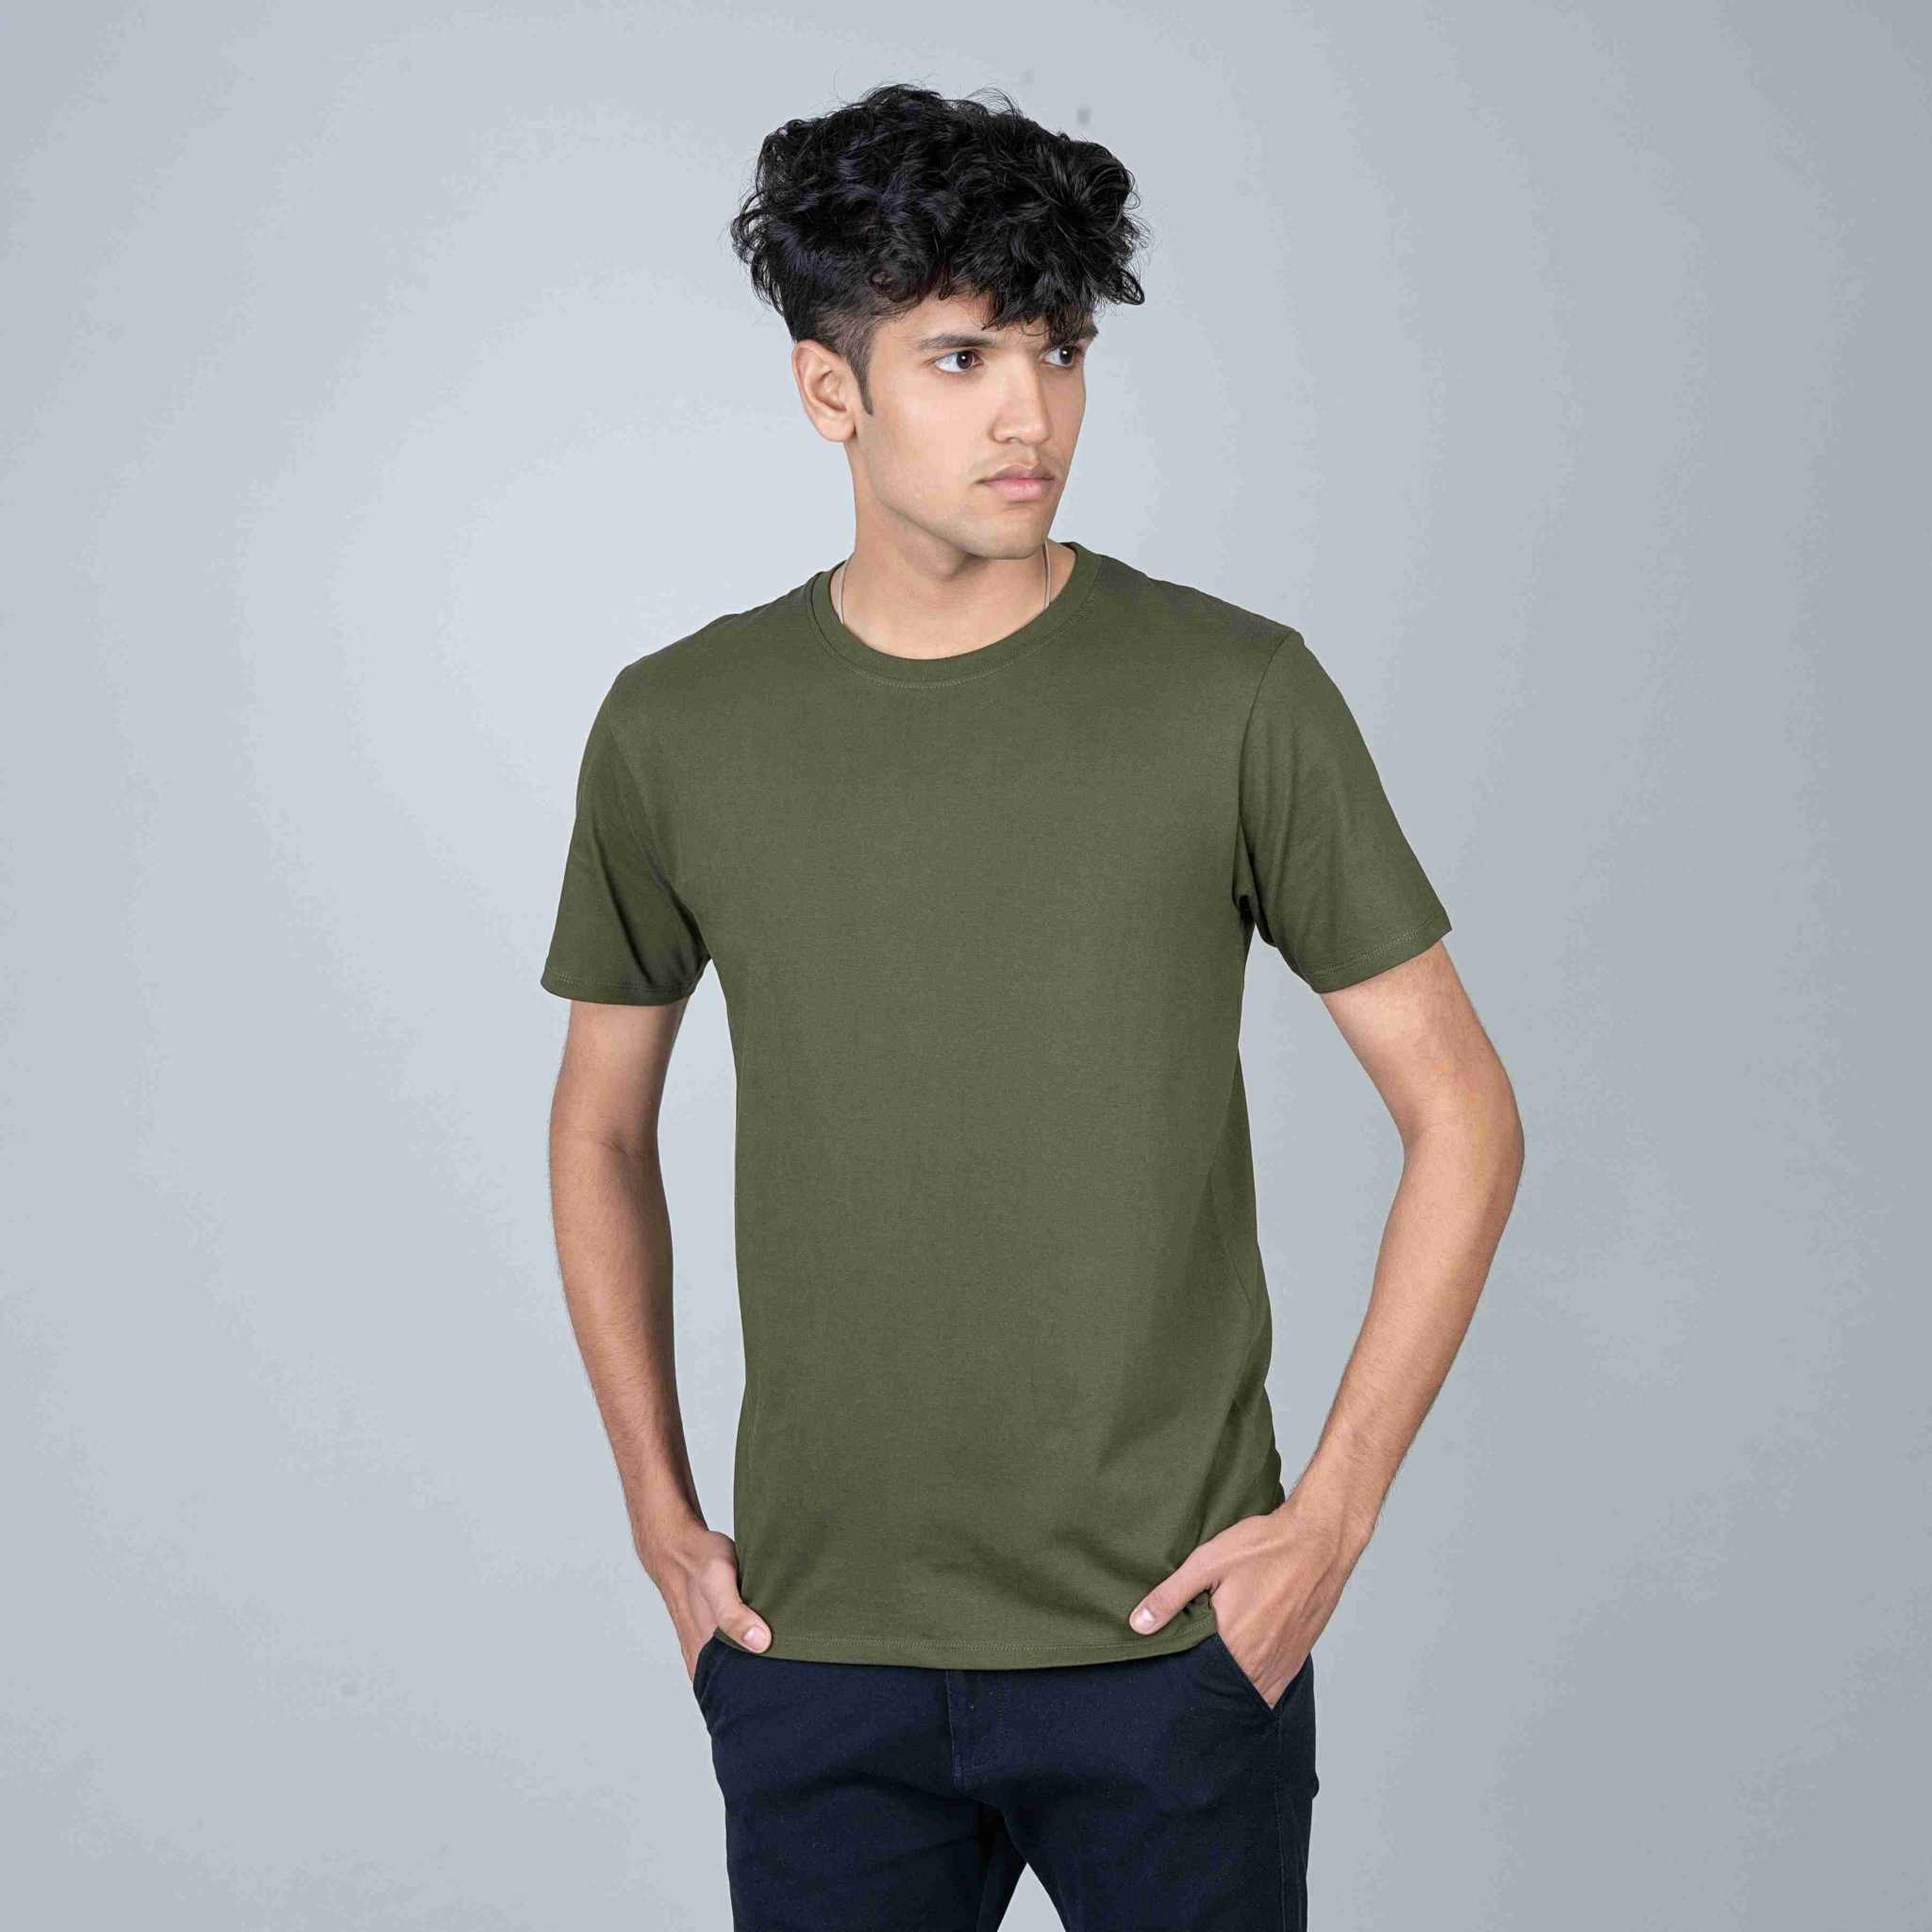 Cotton Slim Round Neck T-Shirt - Olive Green